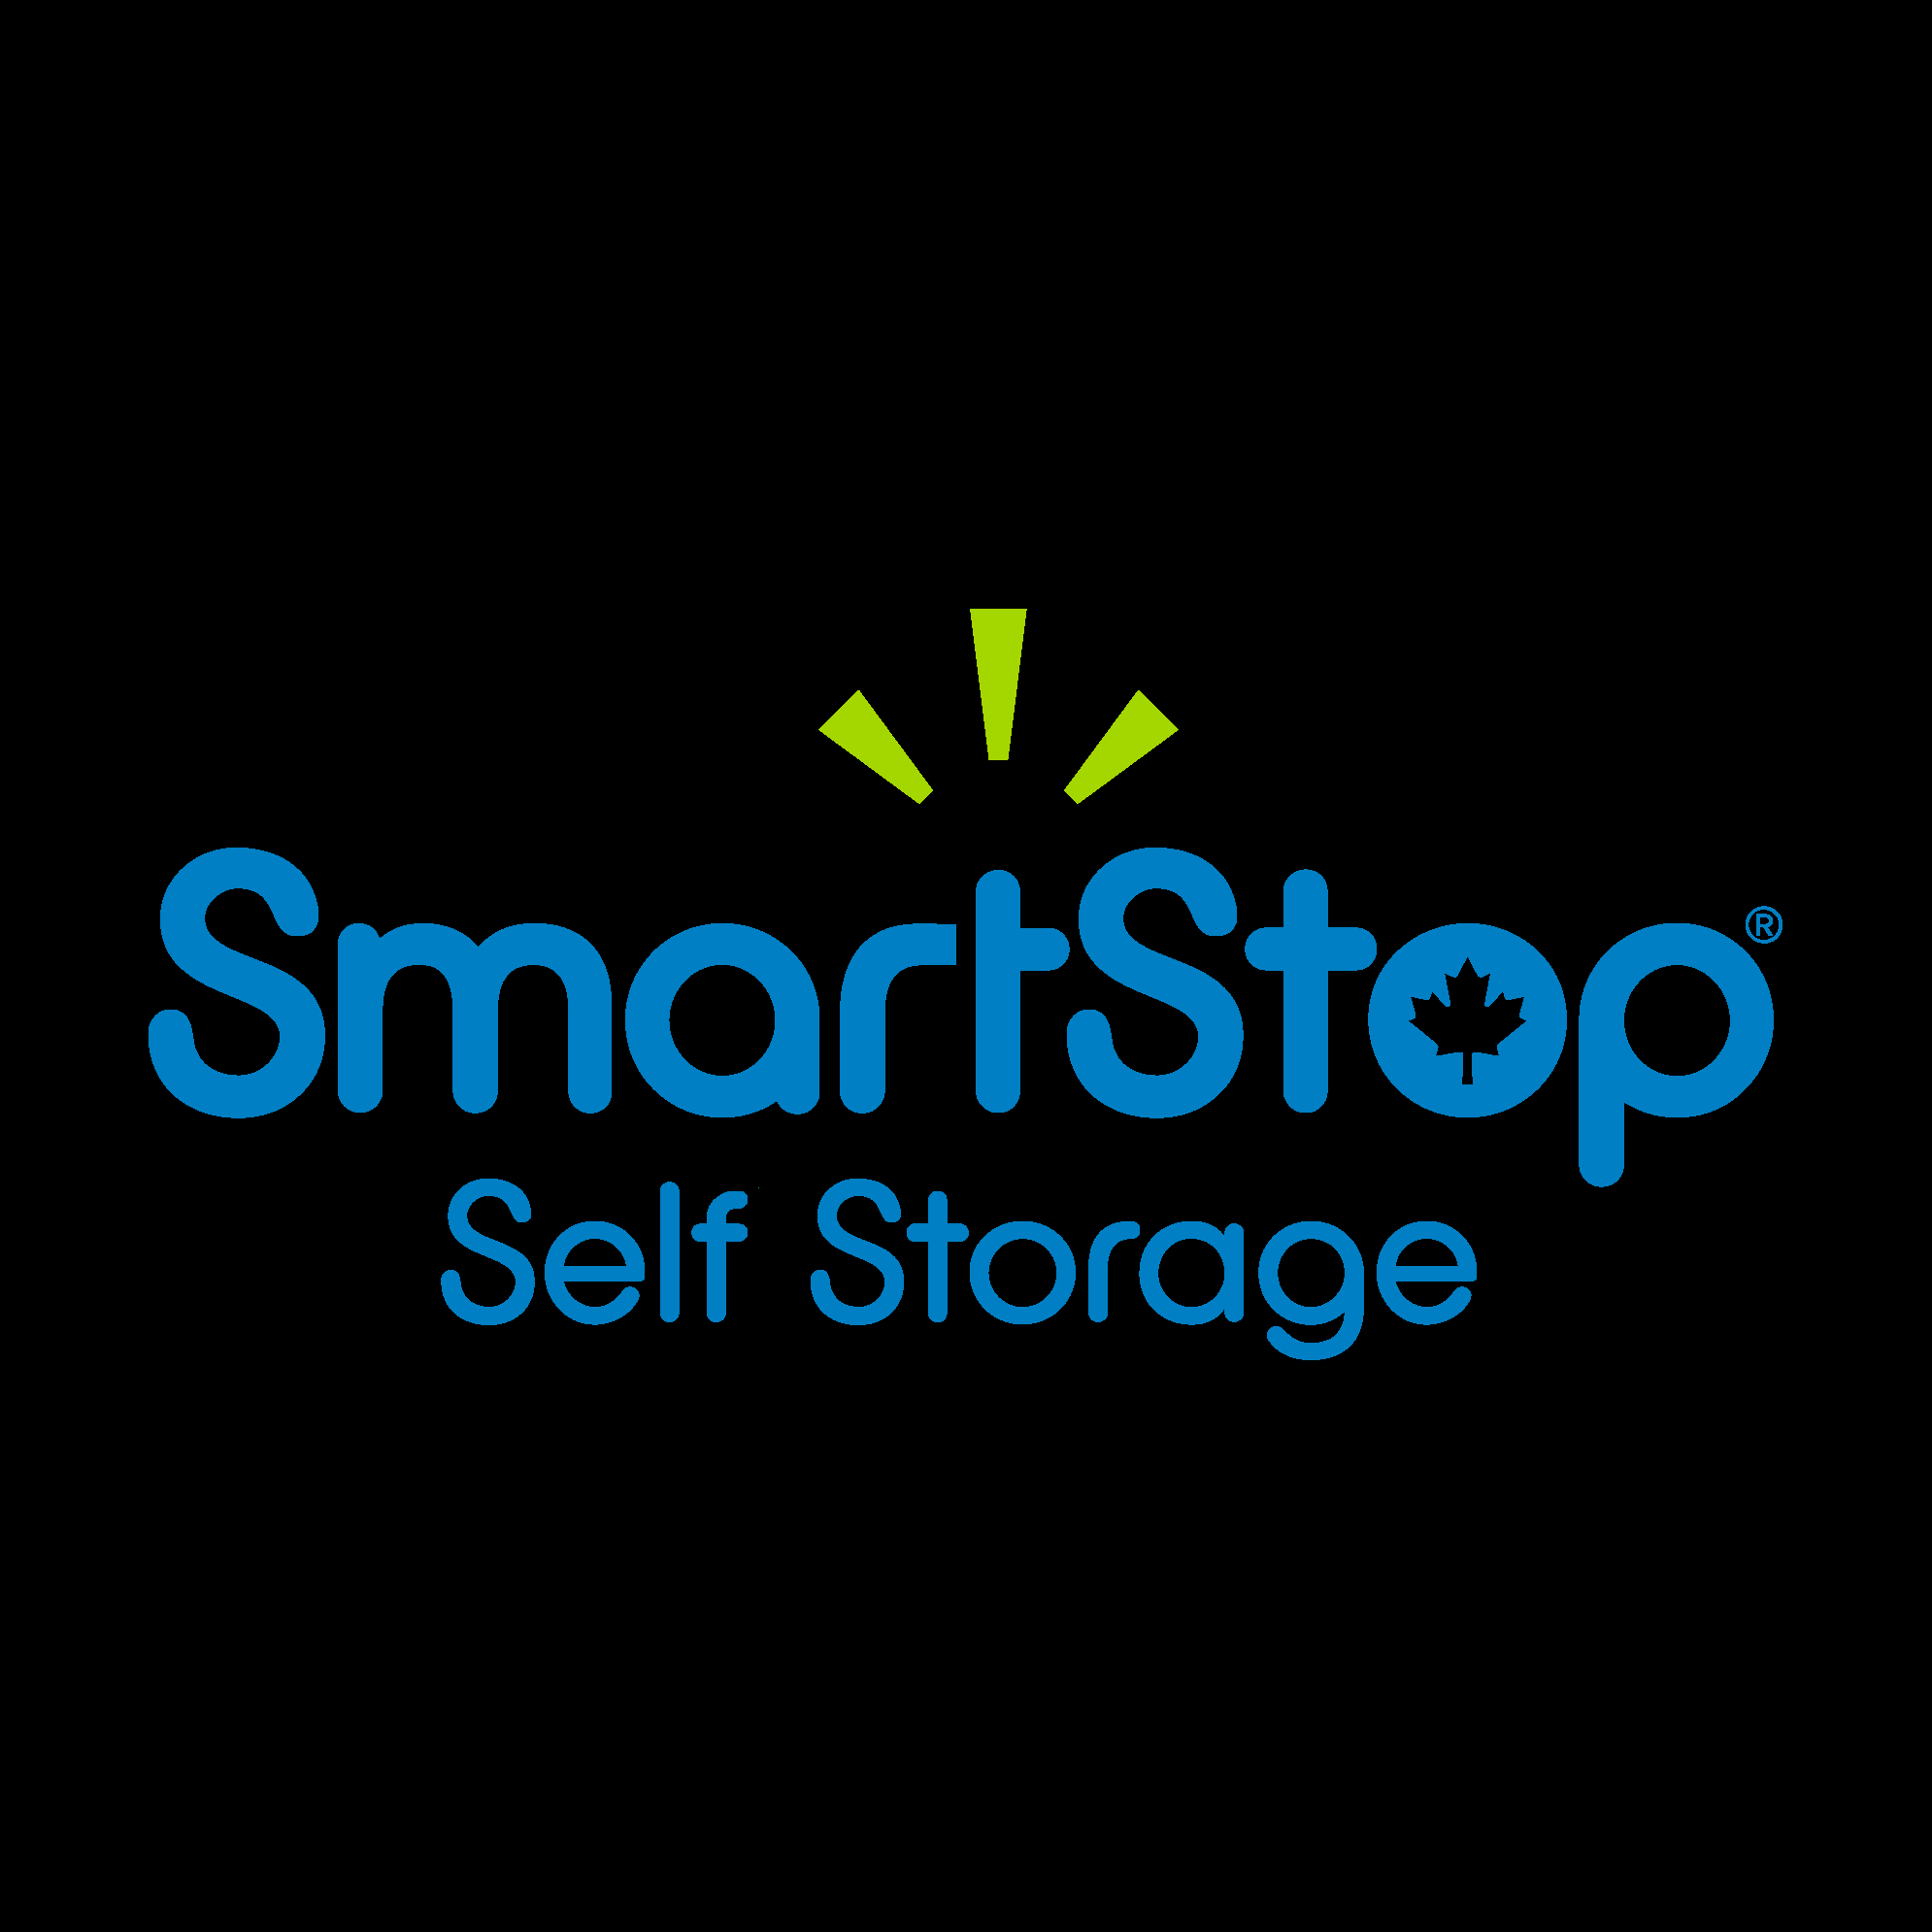 SmartStop Self Storage - Markham - Self-Storage